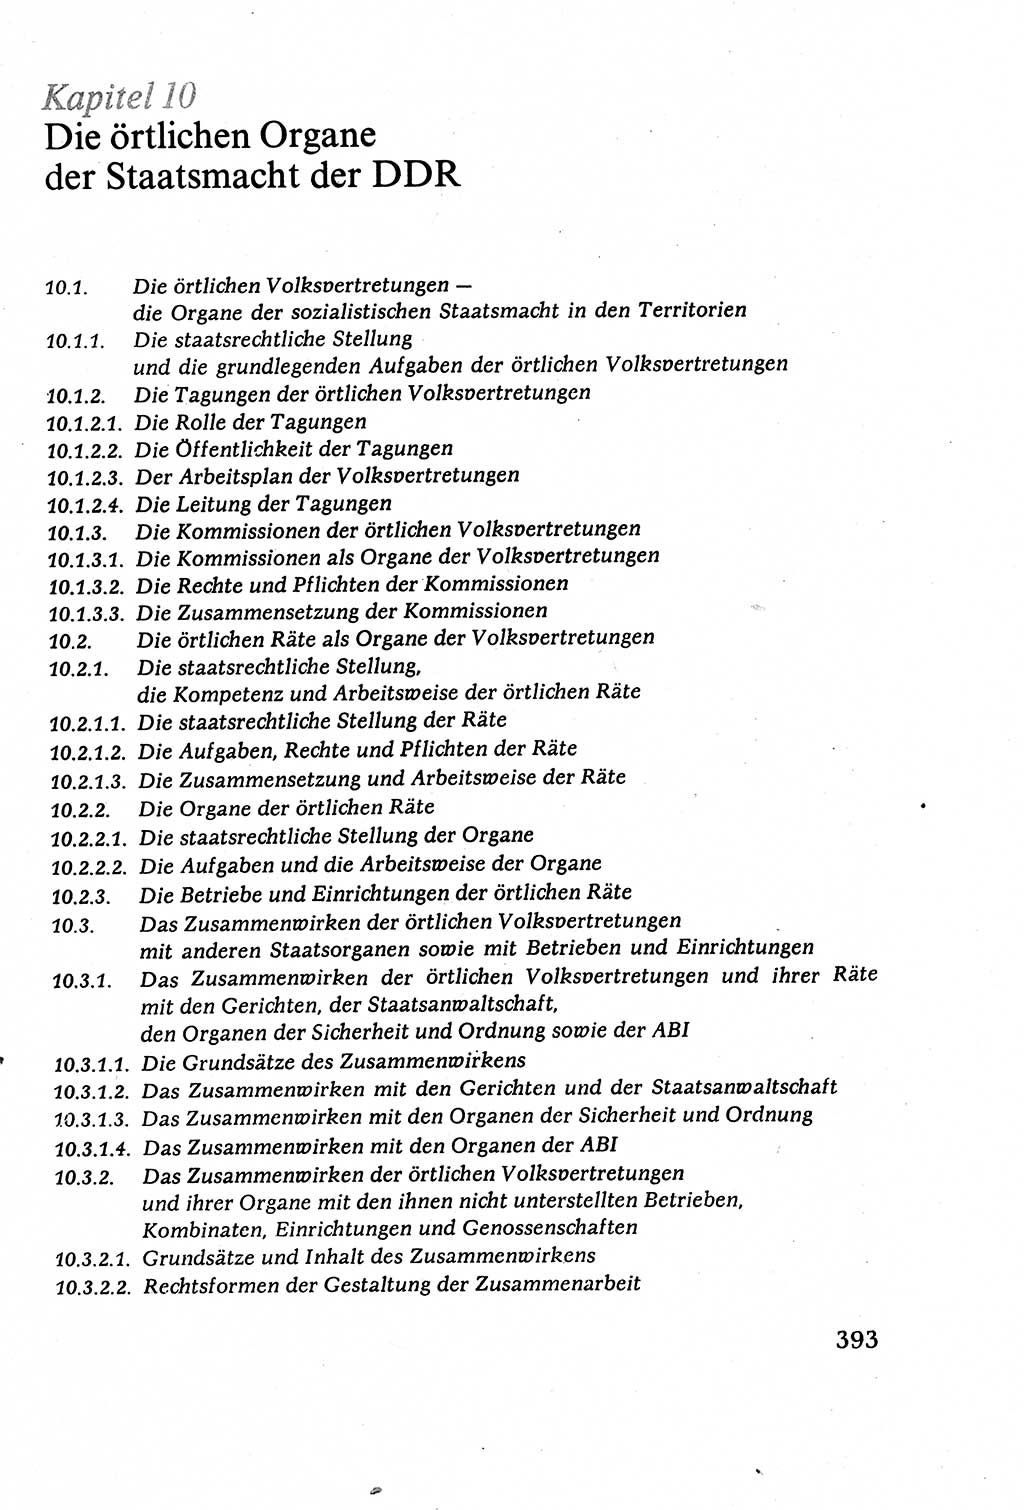 Staatsrecht der DDR (Deutsche Demokratische Republik), Lehrbuch 1977, Seite 393 (St.-R. DDR Lb. 1977, S. 393)